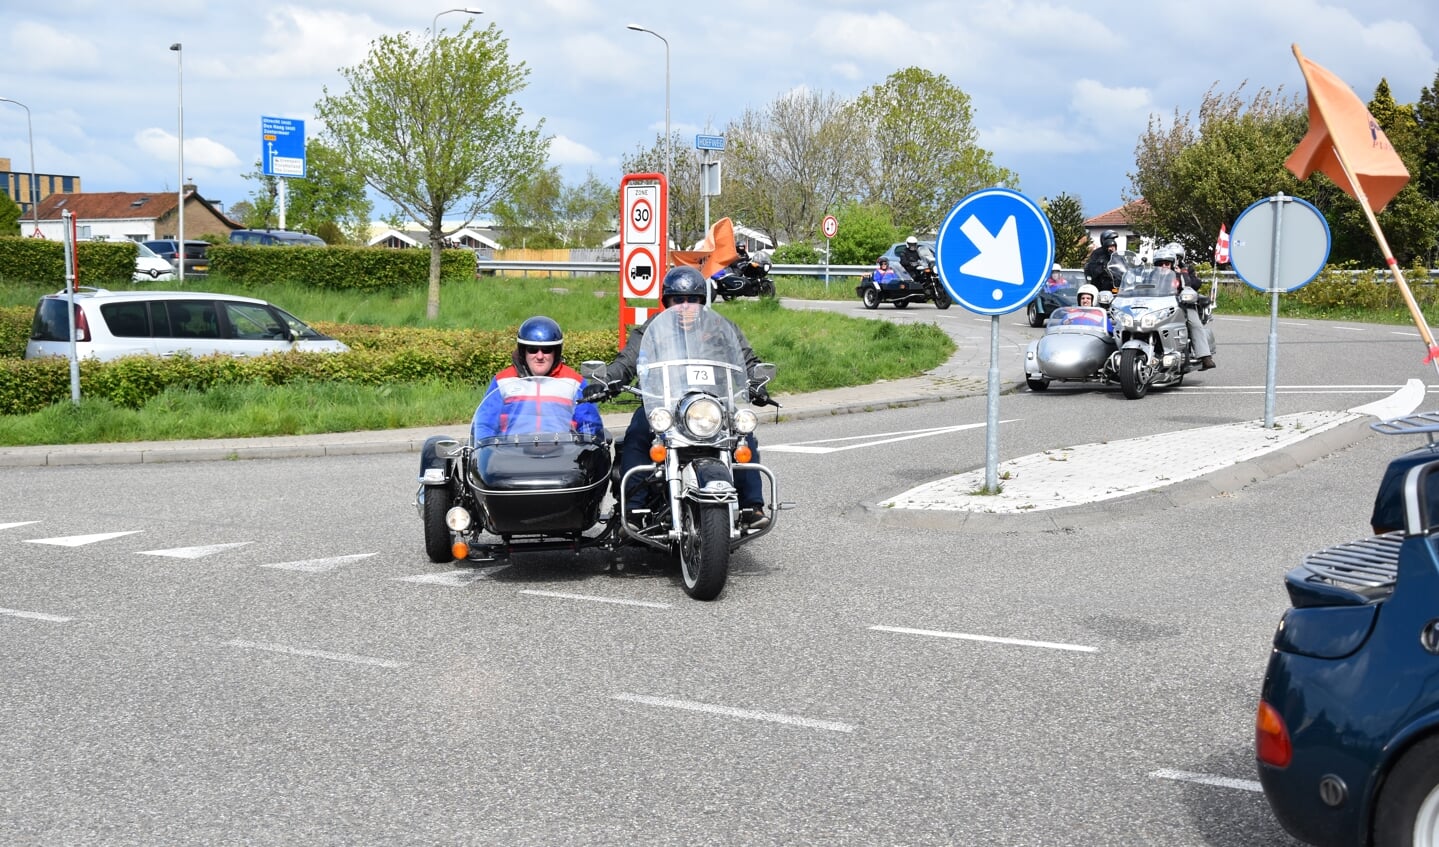 Wietse Pannekoek uit Berkel en Rodenrijs reed ook mee. Hier passeert hij met motorrijder Ton Polak de Hoefweg N209 in Bleiswijk. (foto: Rolf van den Berg)